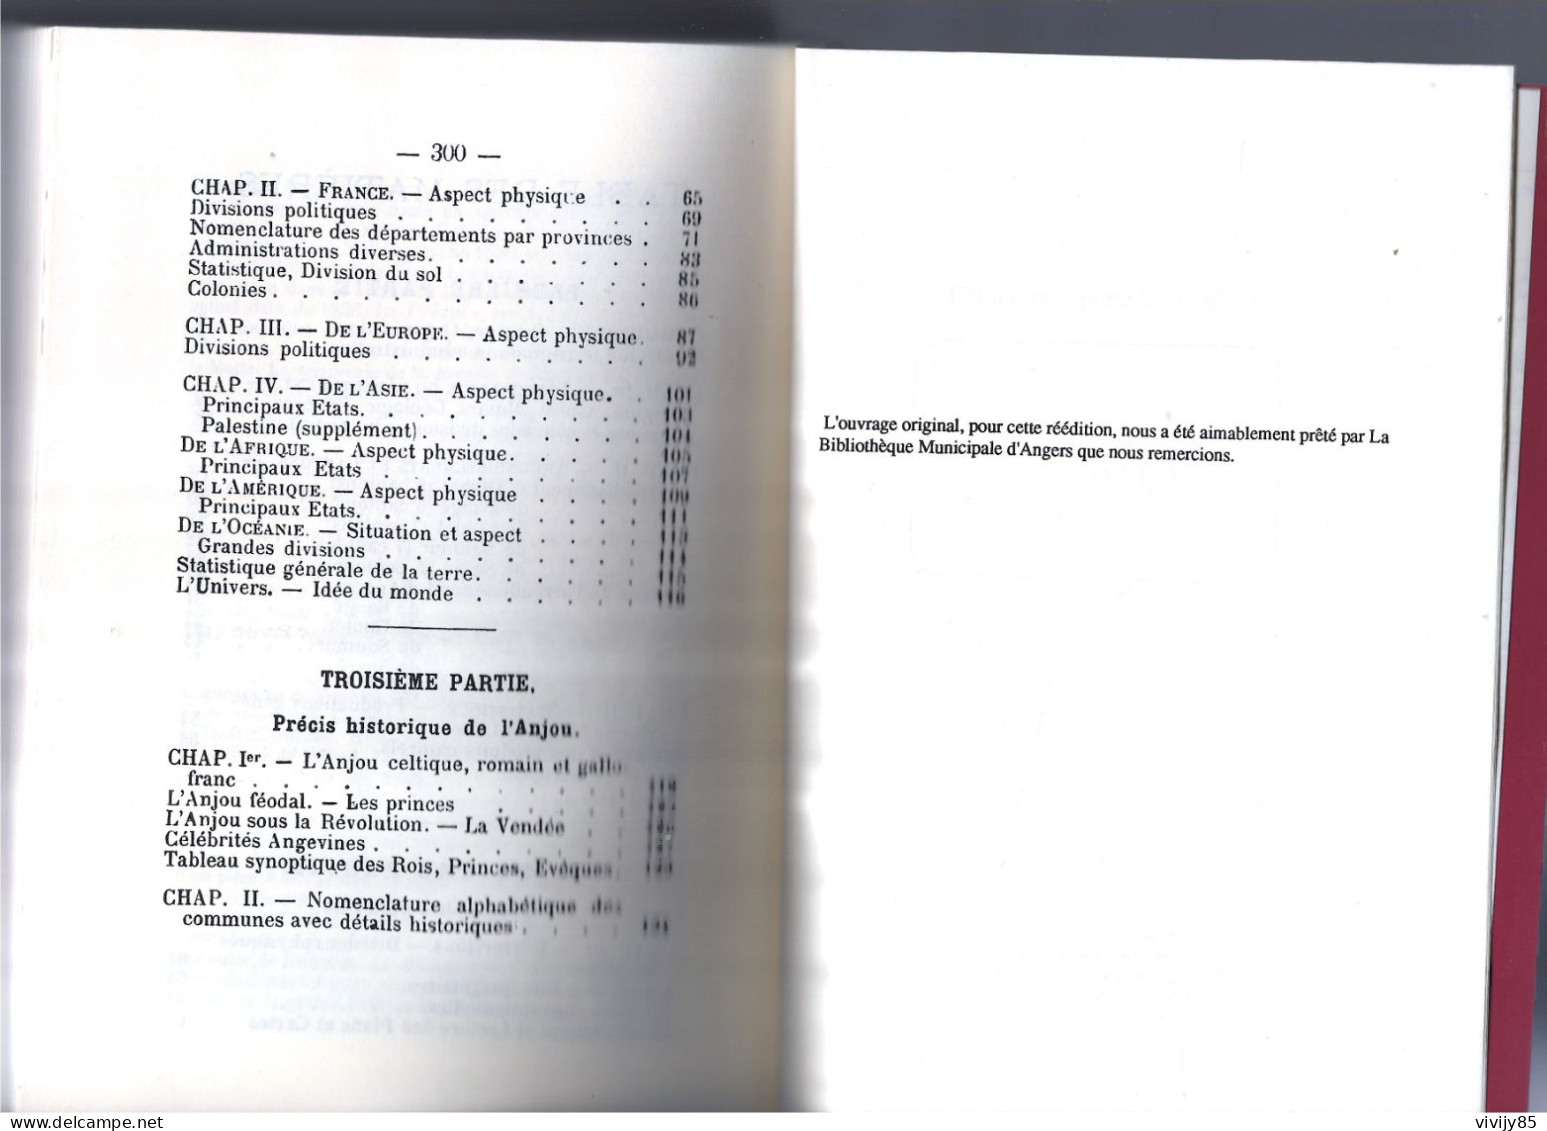 49 - CHOLET-ANGERS- T.B. Livre de 300 pages " le Maine et Loire " de L.F. La Bessière